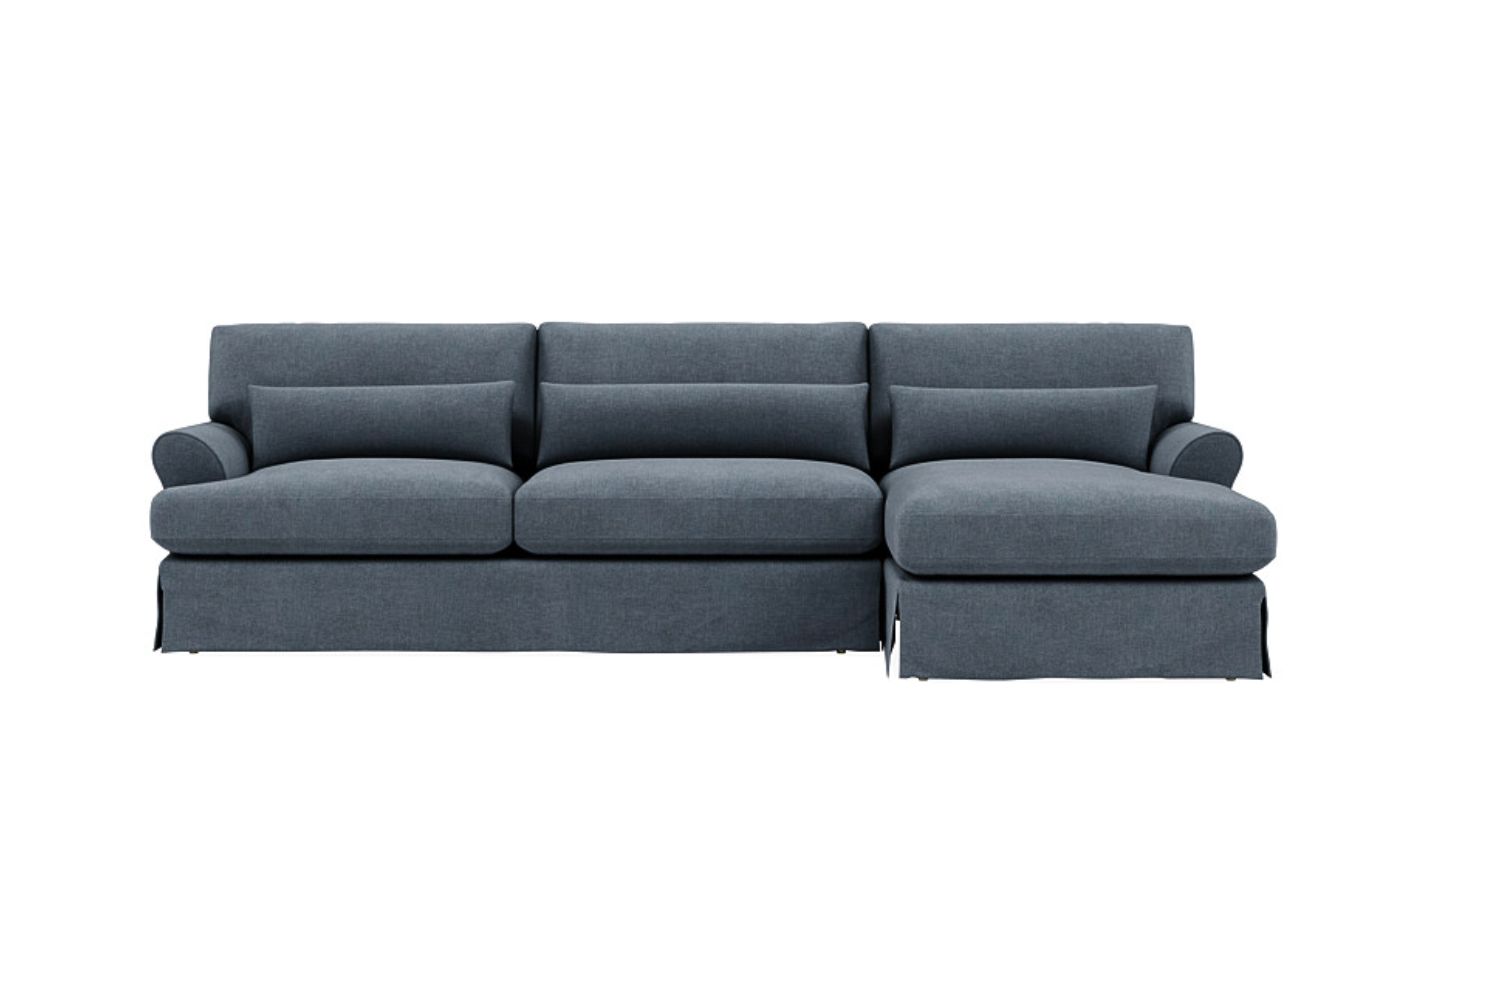 The Best Sofa Brands Option: Interior Define